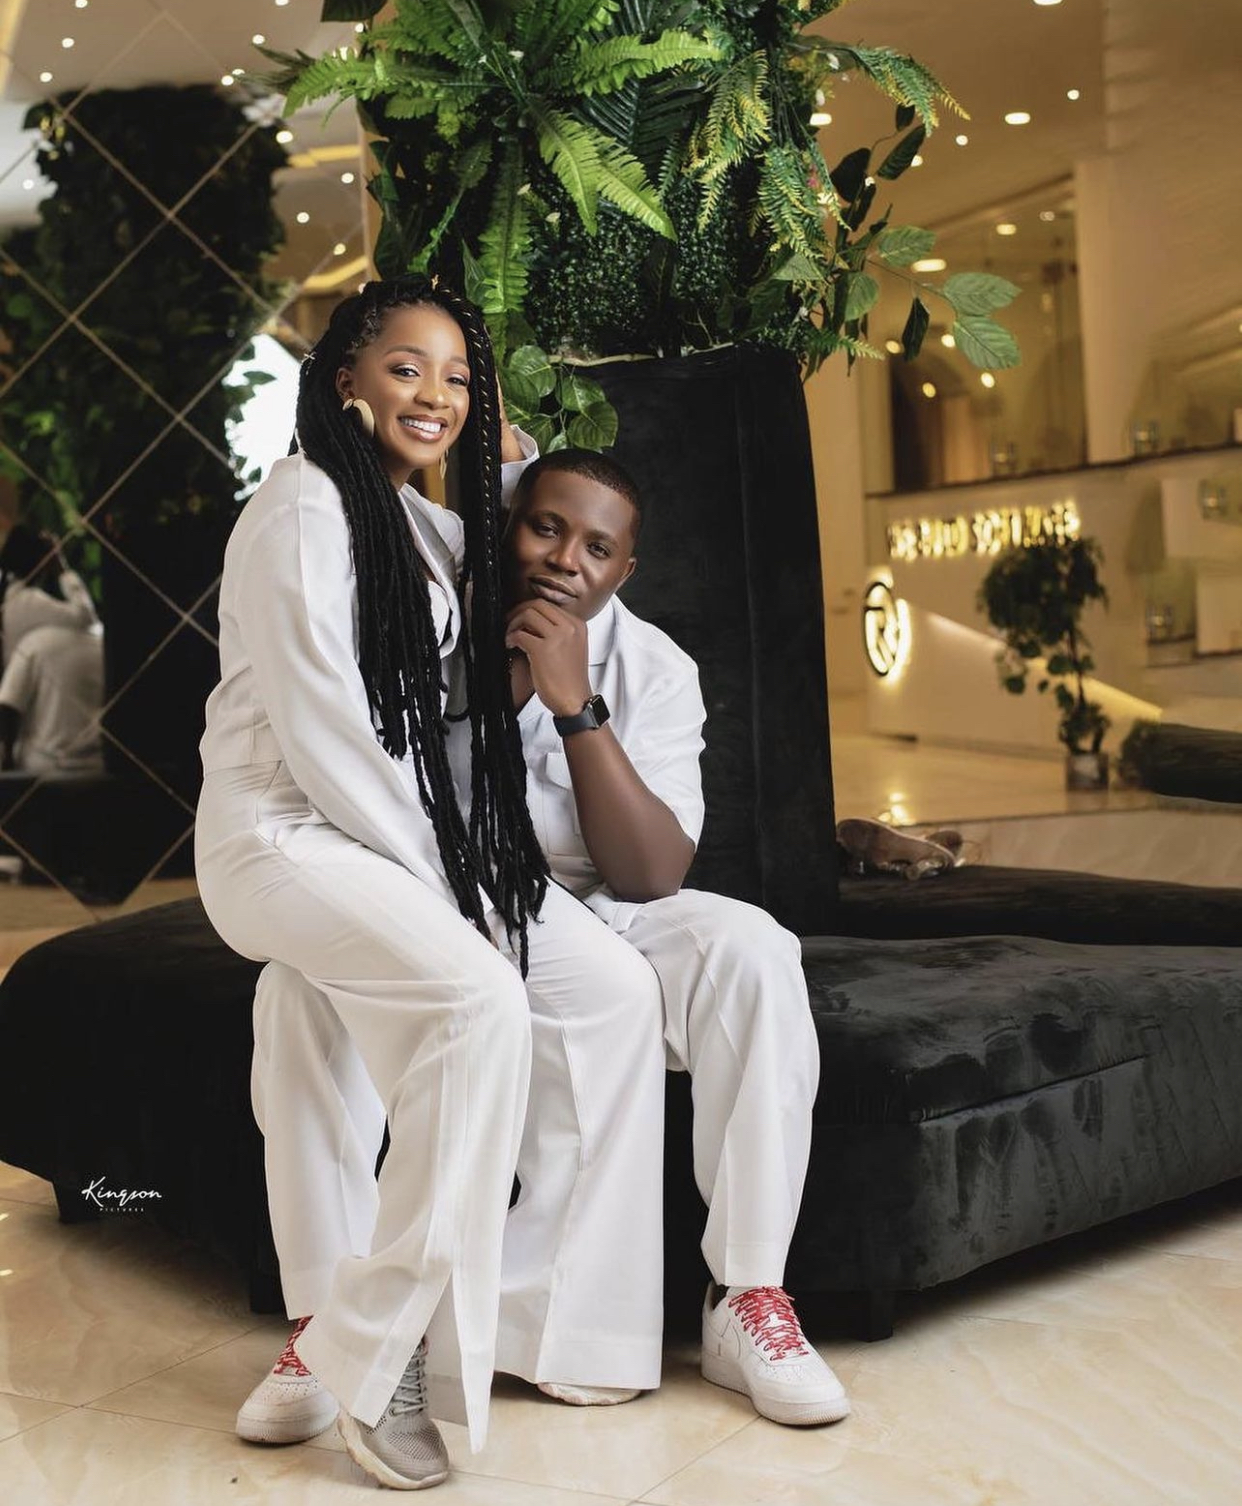 Joy Joy Joy crooner, Rejoice Iwueze of Destiny Kids’ drops white-themed pre-wedding photos